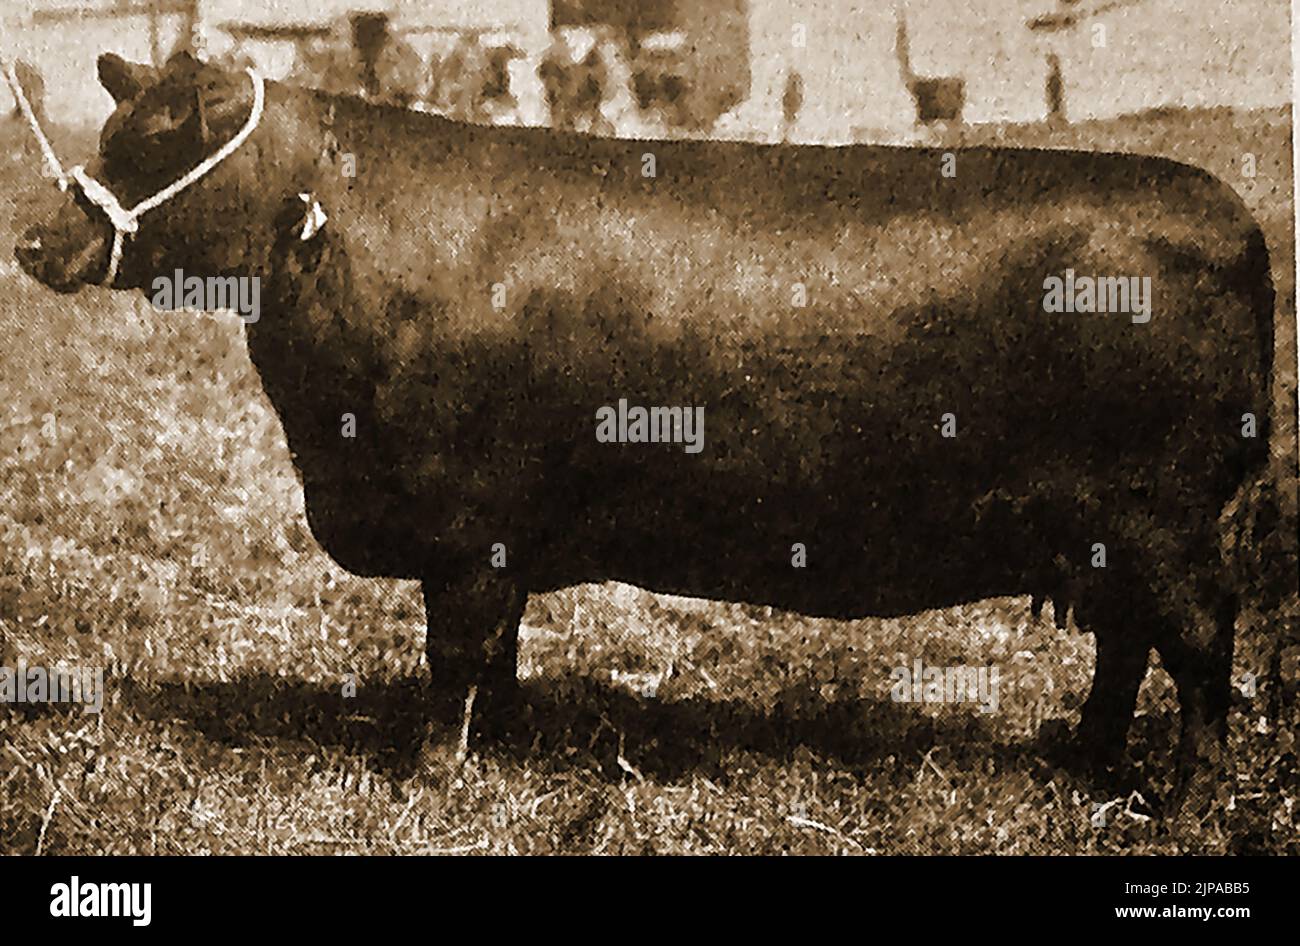 Le bétail britannique se reproduit - Une illustration des années 1930 d'une vache Aberdeen Angus Banque D'Images